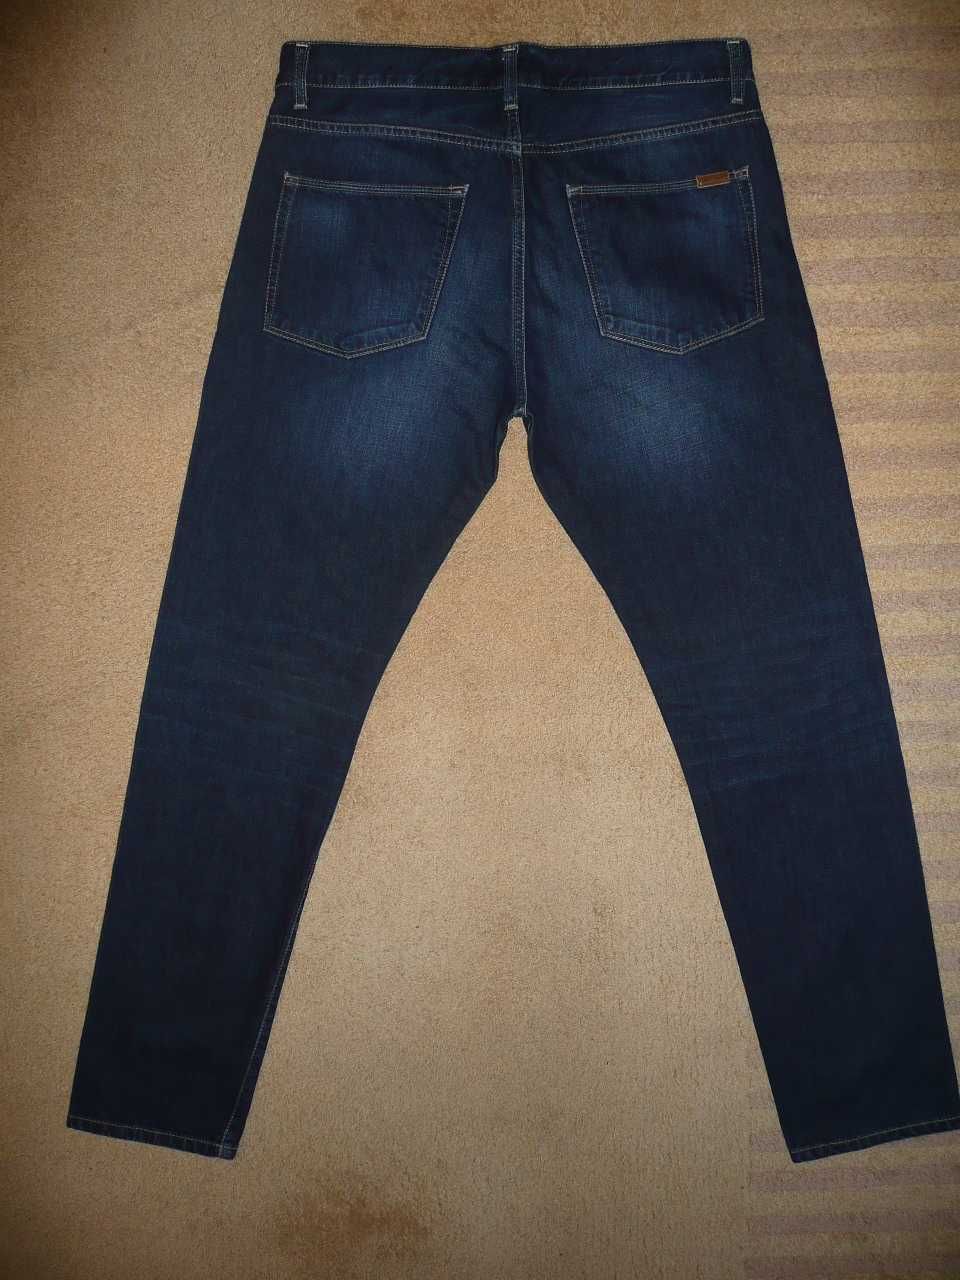 Spodnie dżinsy CARHARTT W33/L32=45/107cm jeansy